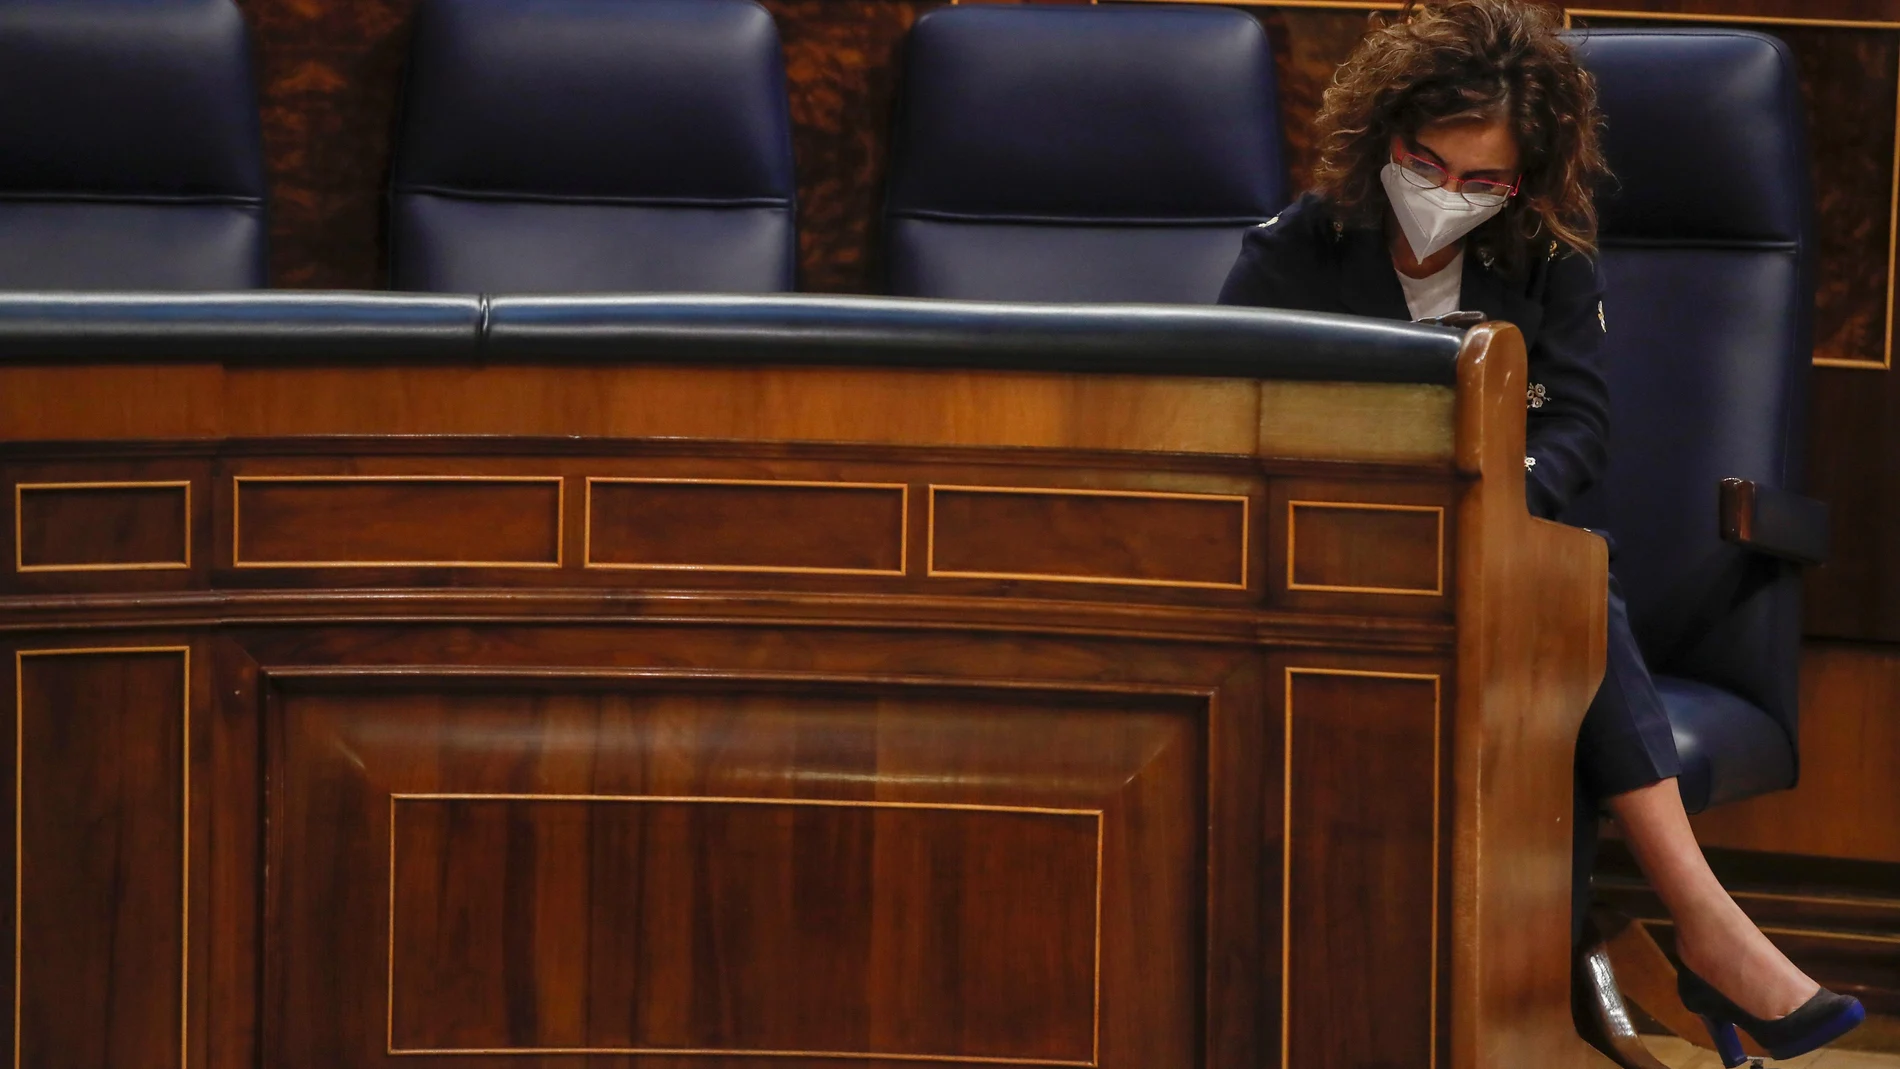 La ministra de Hacienda, María Jesús Montero, toma notas mientras escucha una pregunta de la oposición durante la sesión de control al Gobierno en el Congreso de los Diputados